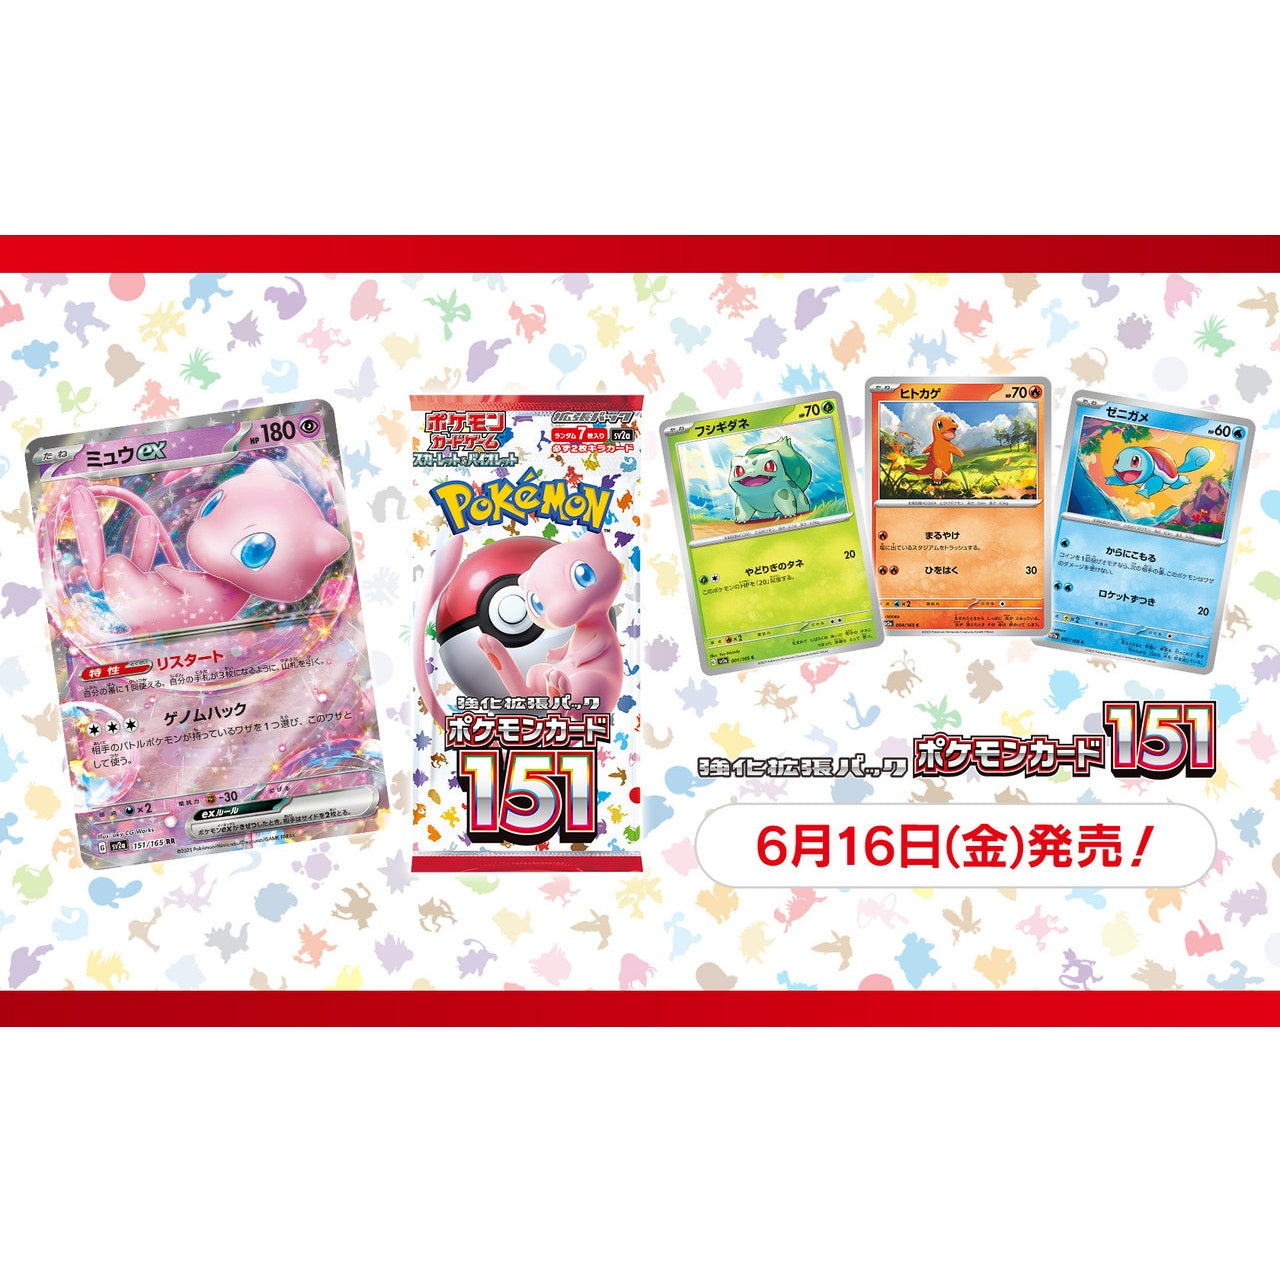 Pokémon TCG: Scarlet & Violet 151 Booster Pack (Japanese)-The Pokémon Company International-Ace Cards & Collectibles